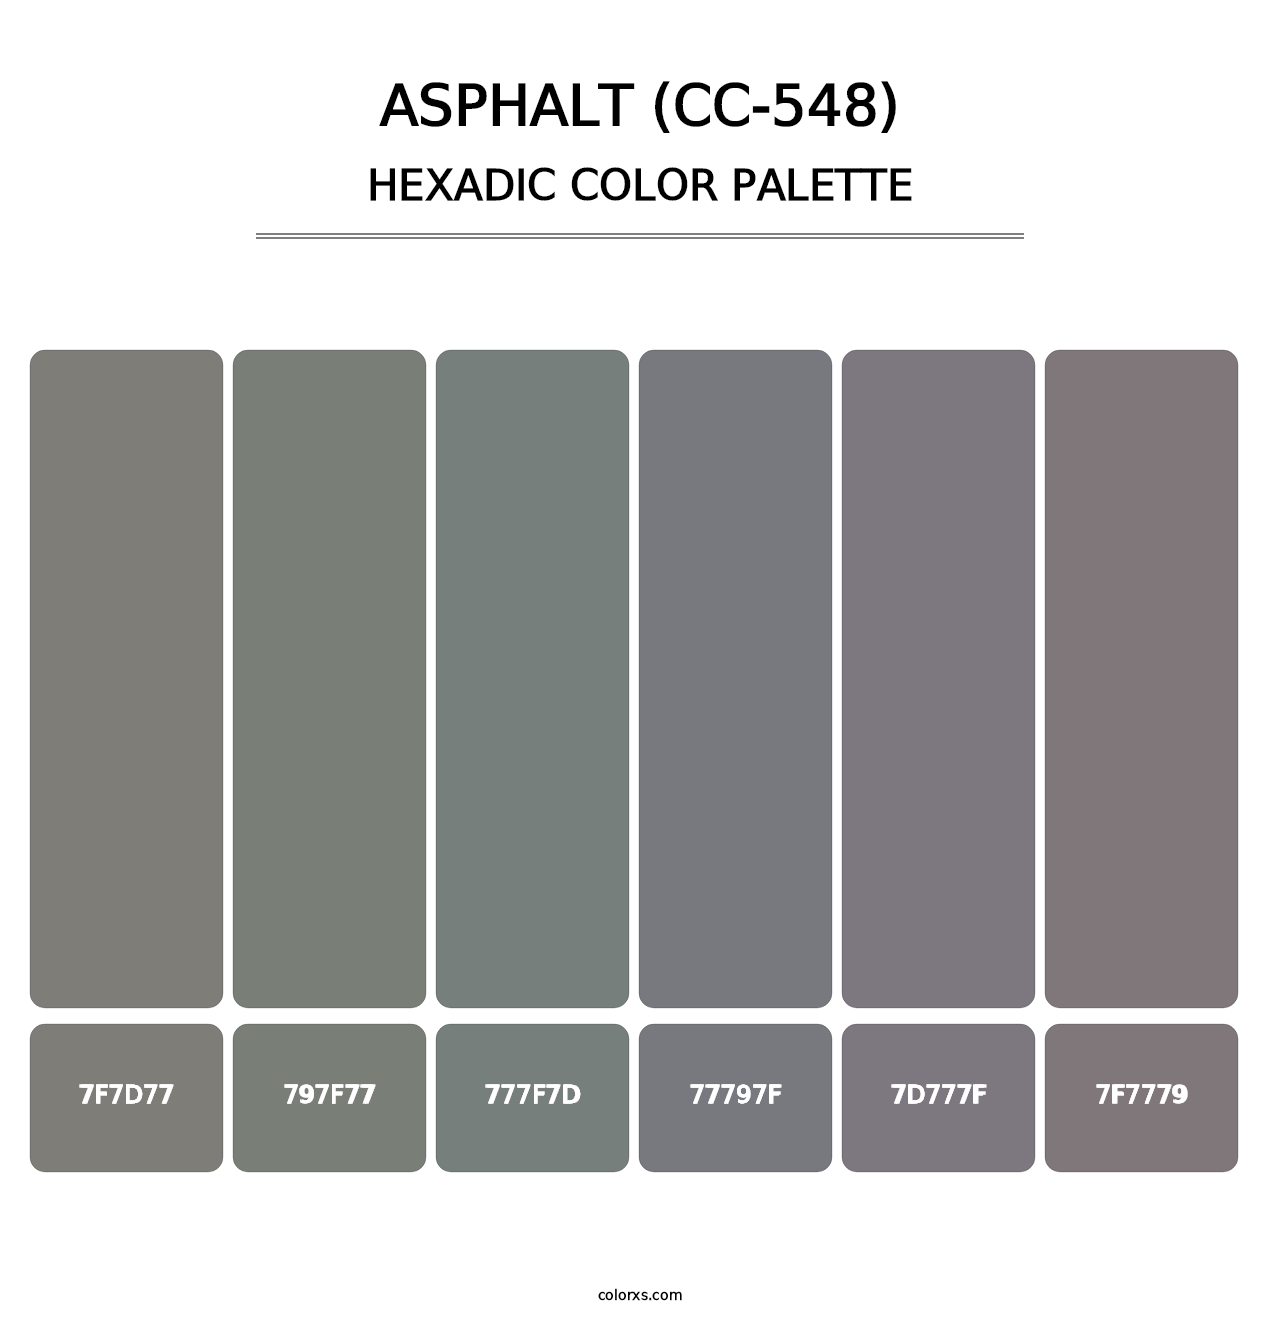 Asphalt (CC-548) - Hexadic Color Palette